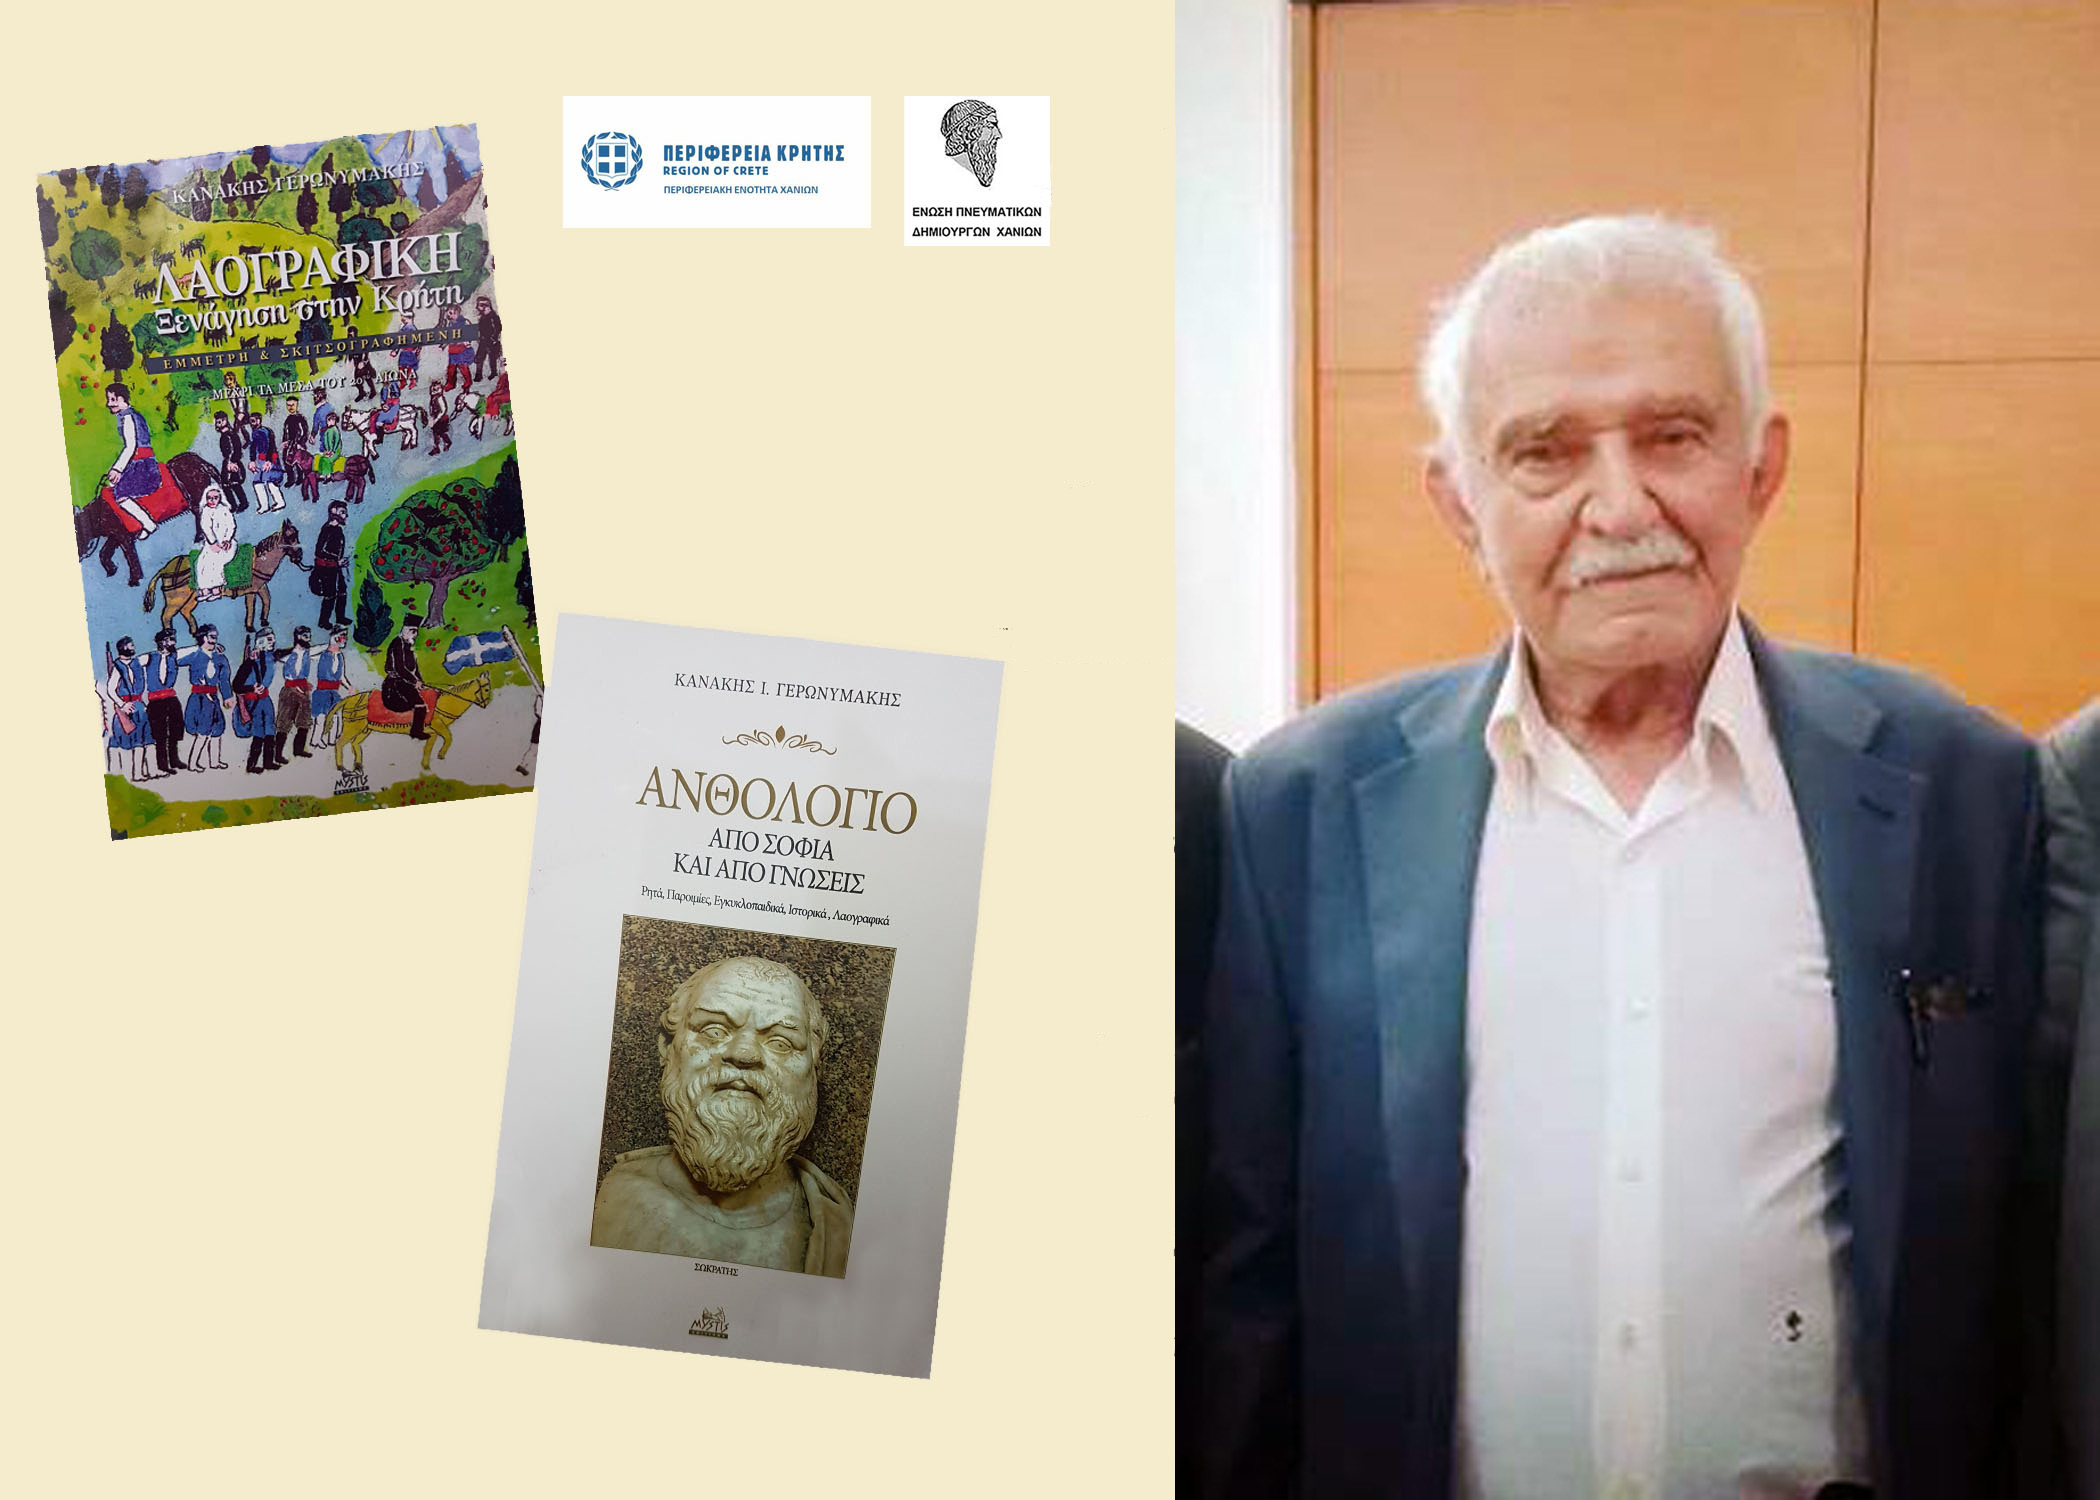 Παρουσίαση δύο βιβλίων του Σφακιανού λαογράφου και συγγραφέα Κανάκη Γερωνυμάκη